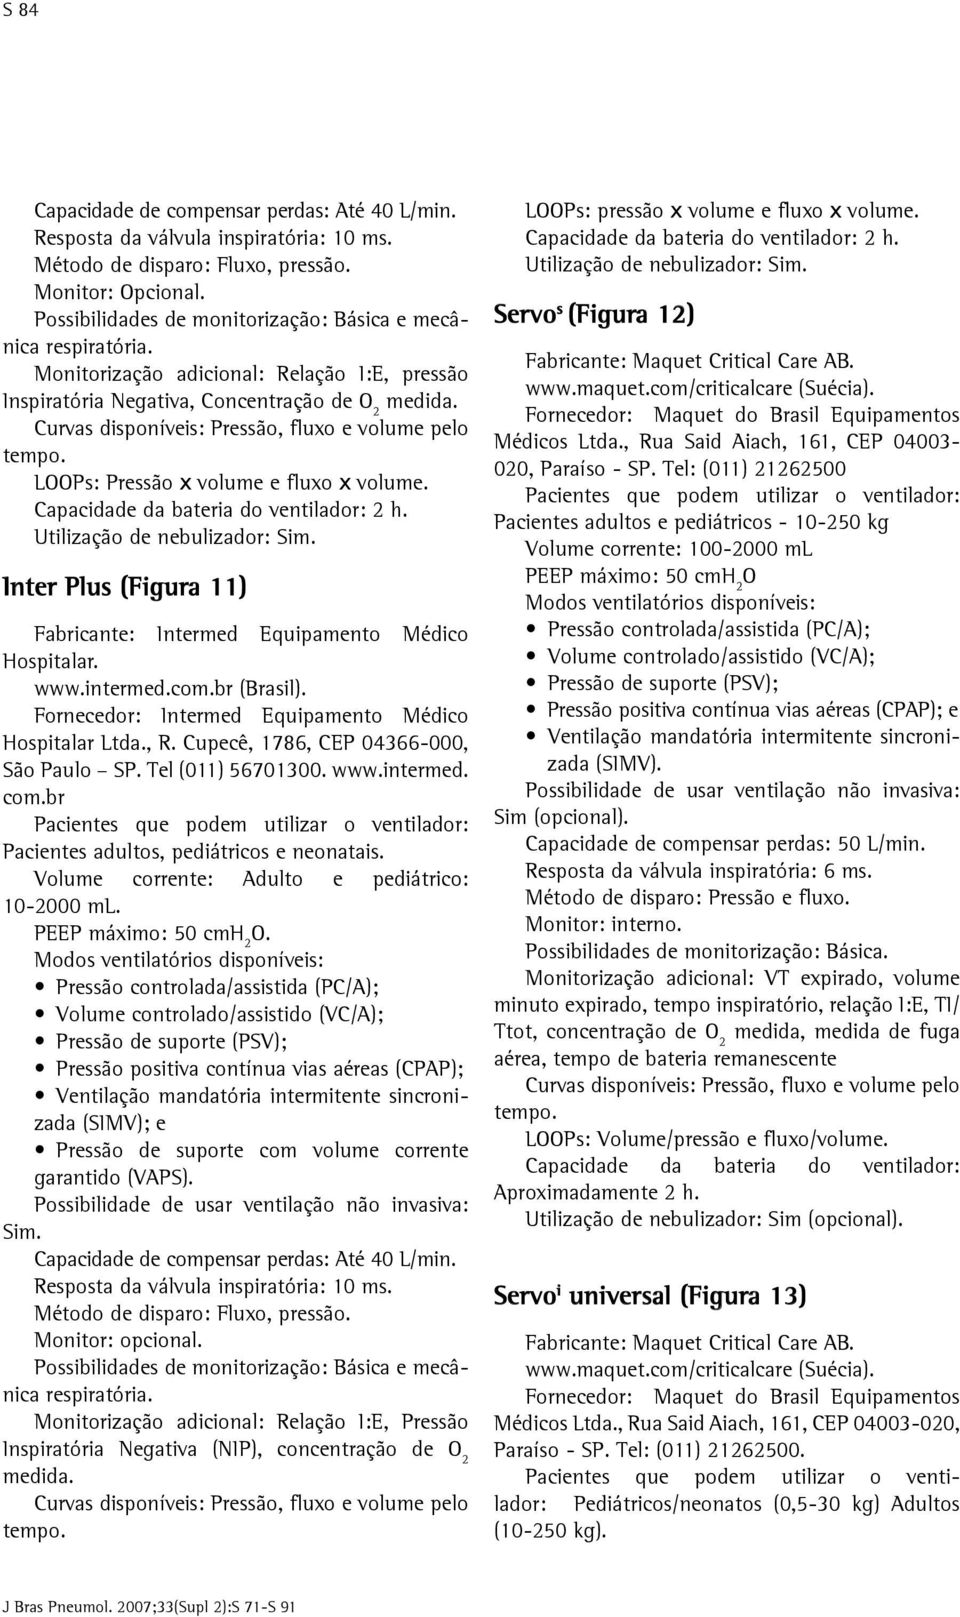 Utilização de nebulizador: Inter Plus (Figura 11) Fabricante: Intermed Equipamento Médico Hospitalar. www.intermed.com.br (Brasil). Fornecedor: Intermed Equipamento Médico Hospitalar Ltda., R.